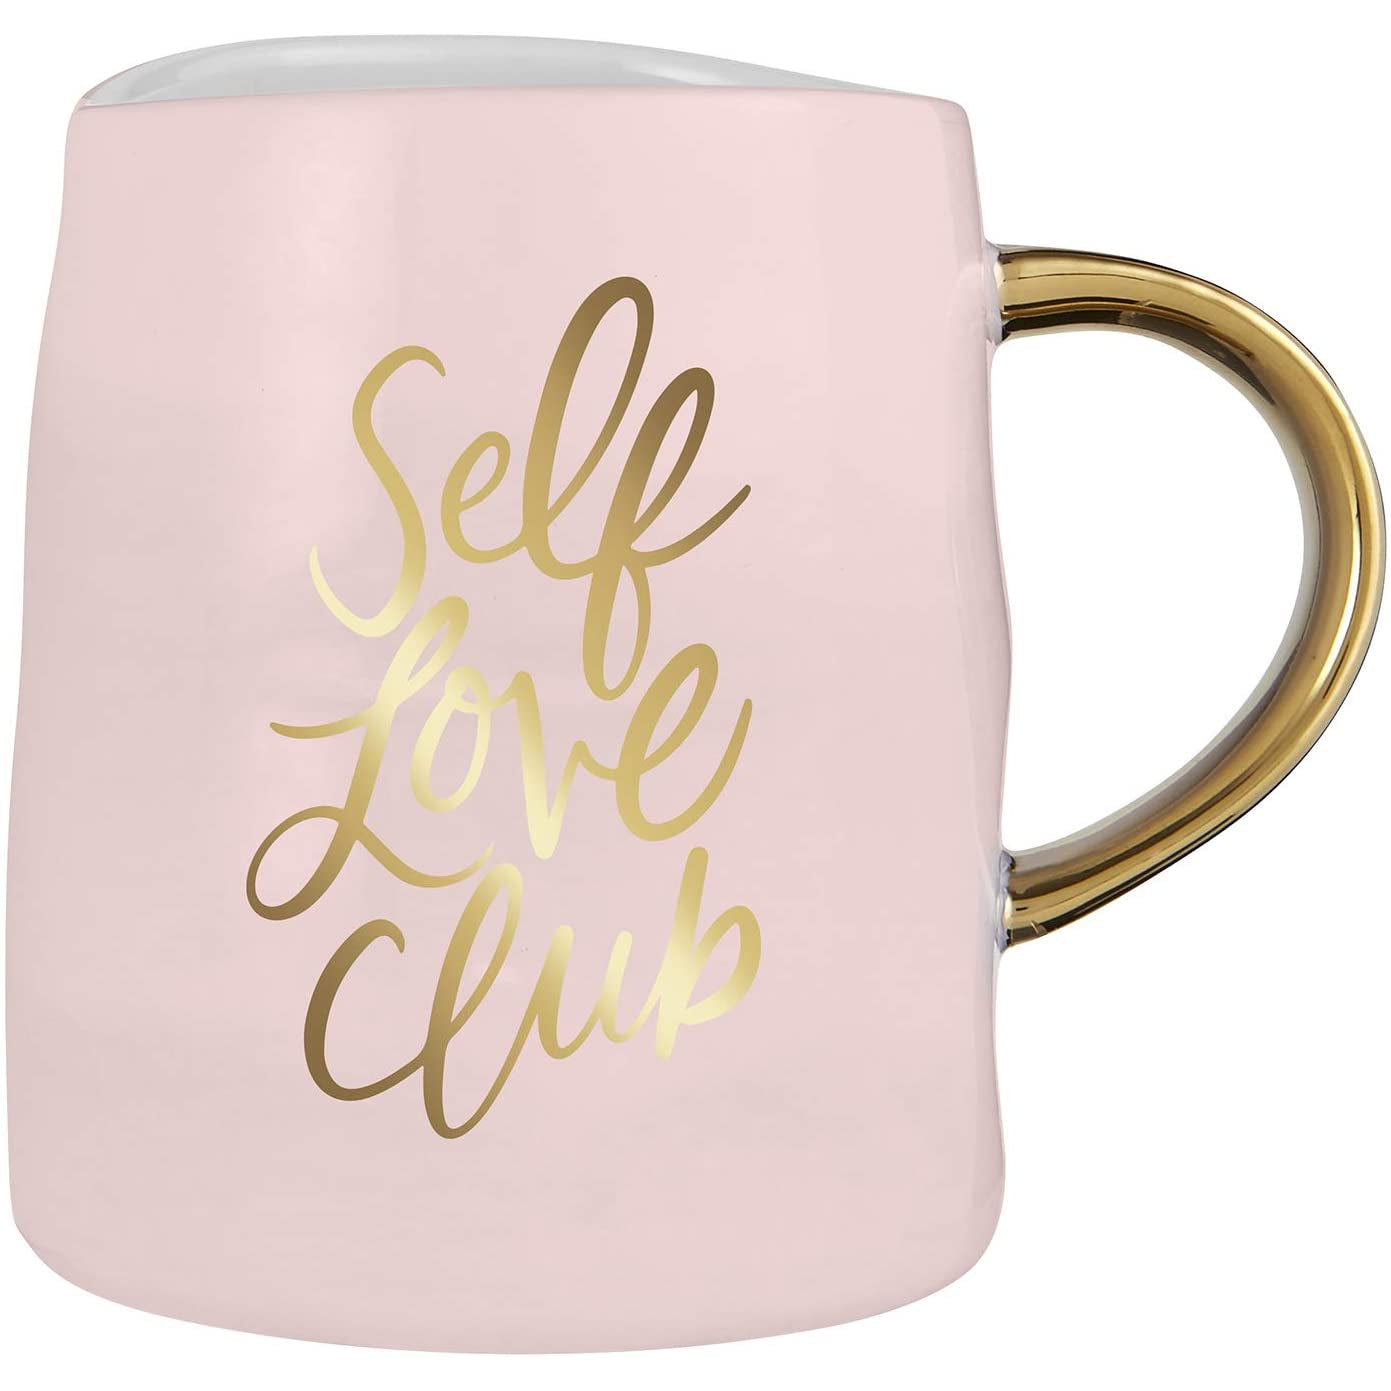 Self Love Club Artisanal Mug and Saucer Set